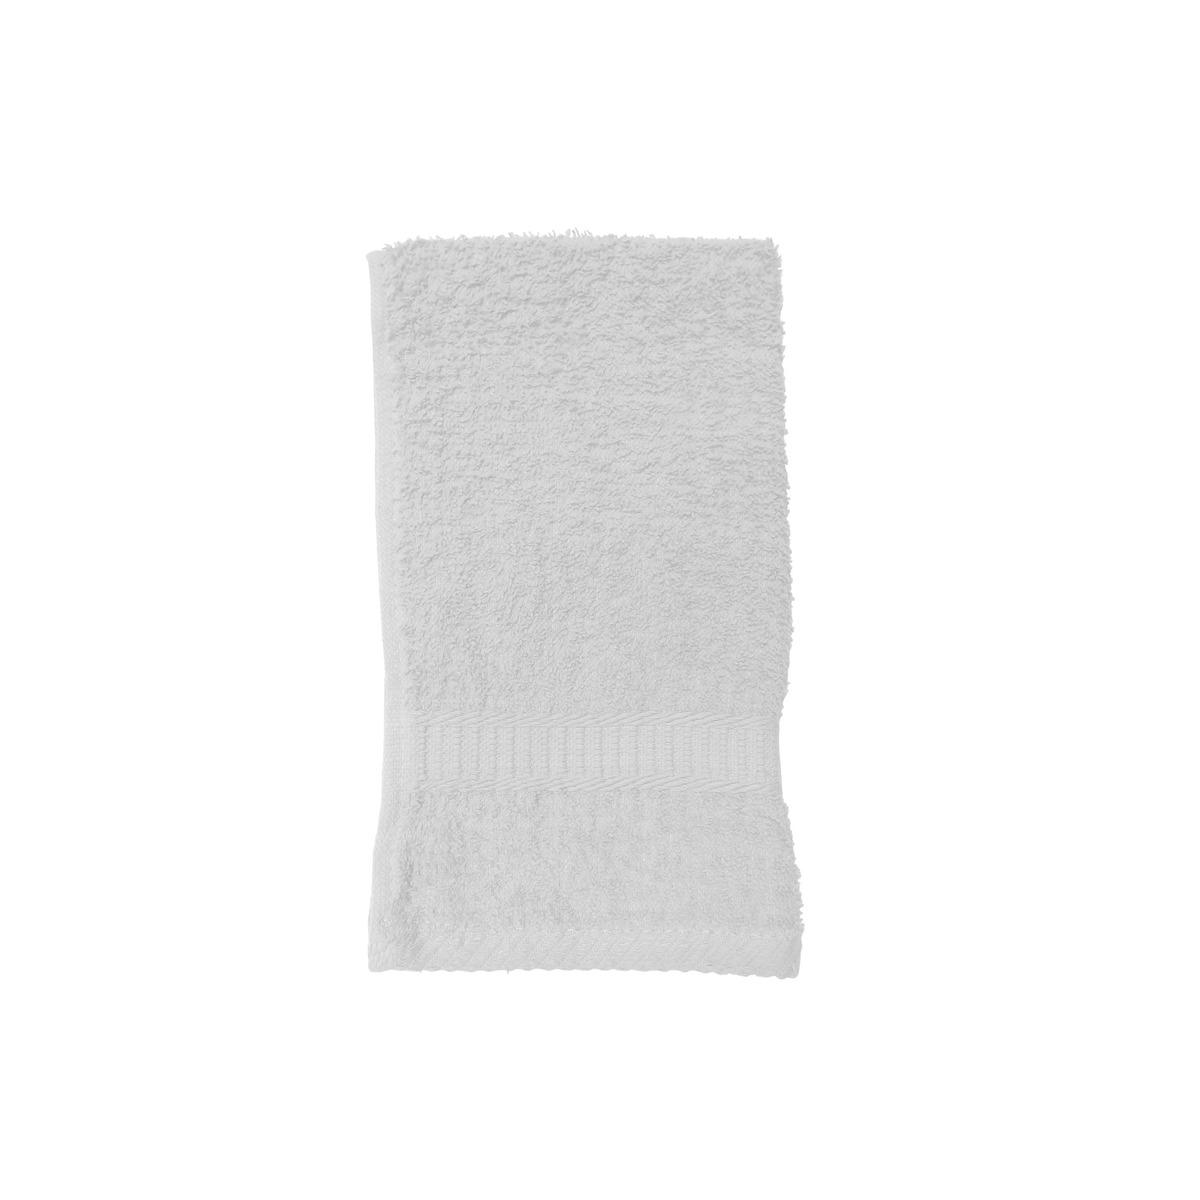 Serviette de toilette - 30 x 50 cm - Blanc chantilly